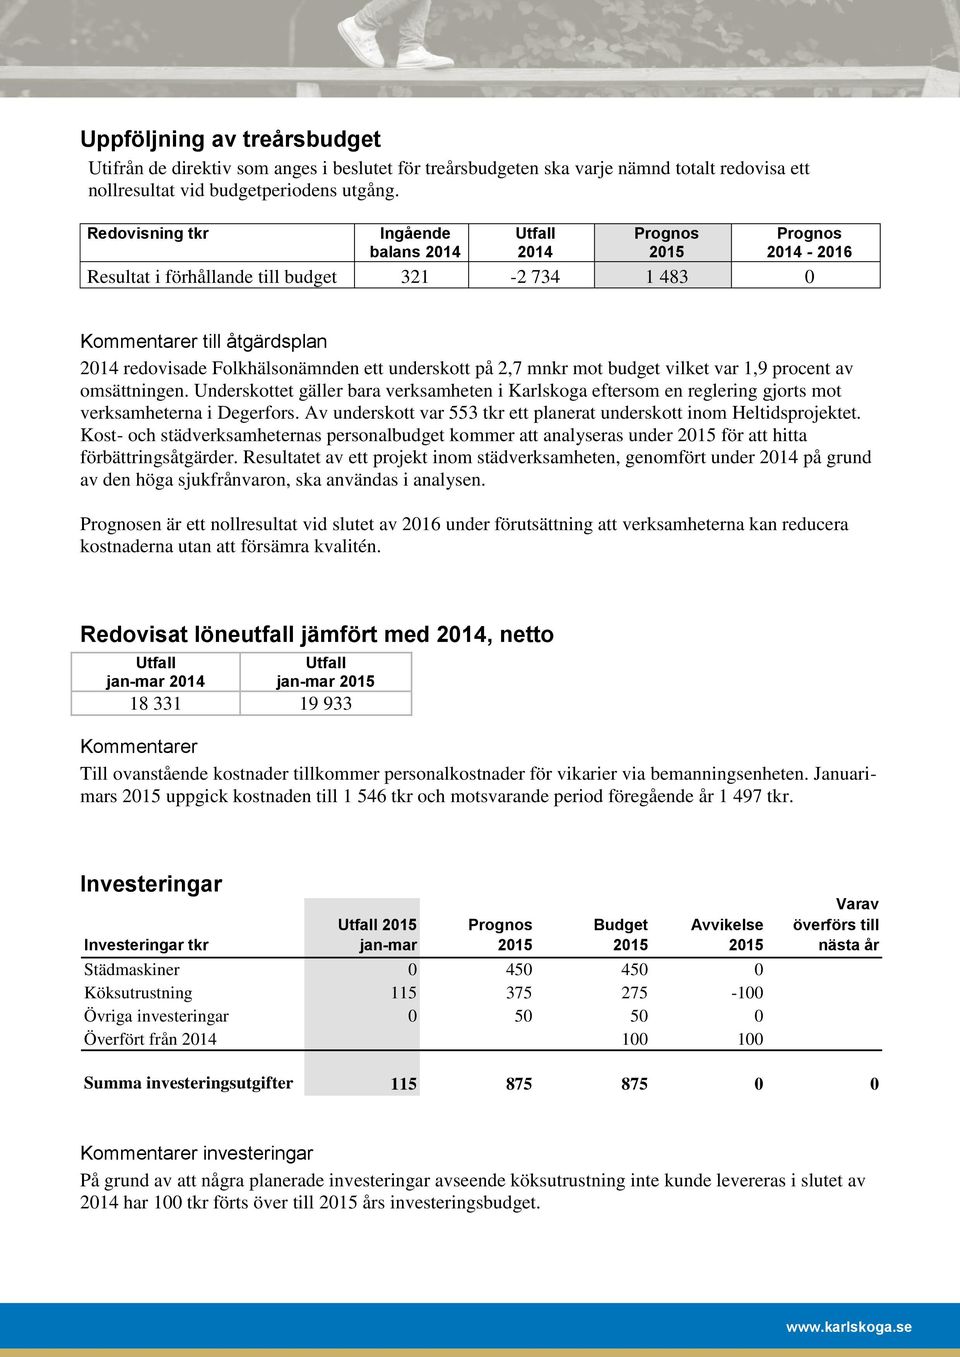 underskott på 2,7 mnkr mot budget vilket var 1,9 procent av omsättningen. Underskottet gäller bara verksamheten i Karlskoga eftersom en reglering gjorts mot verksamheterna i Degerfors.